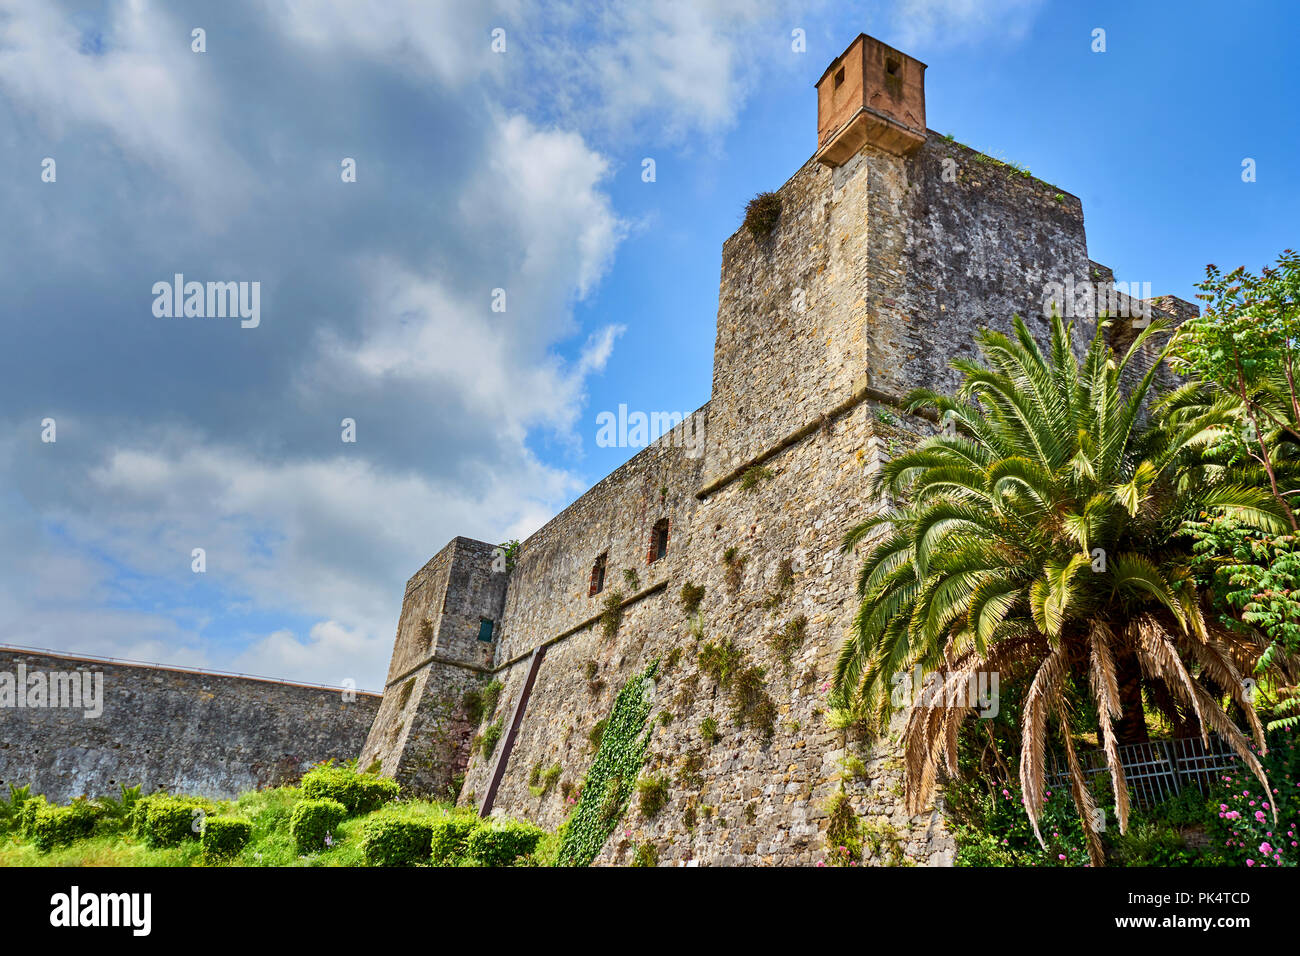 Le Château Saint-Georges, la tour génoise qui domine les collines de fortification de la ville de La Spezia / Ligurie / Italie Banque D'Images